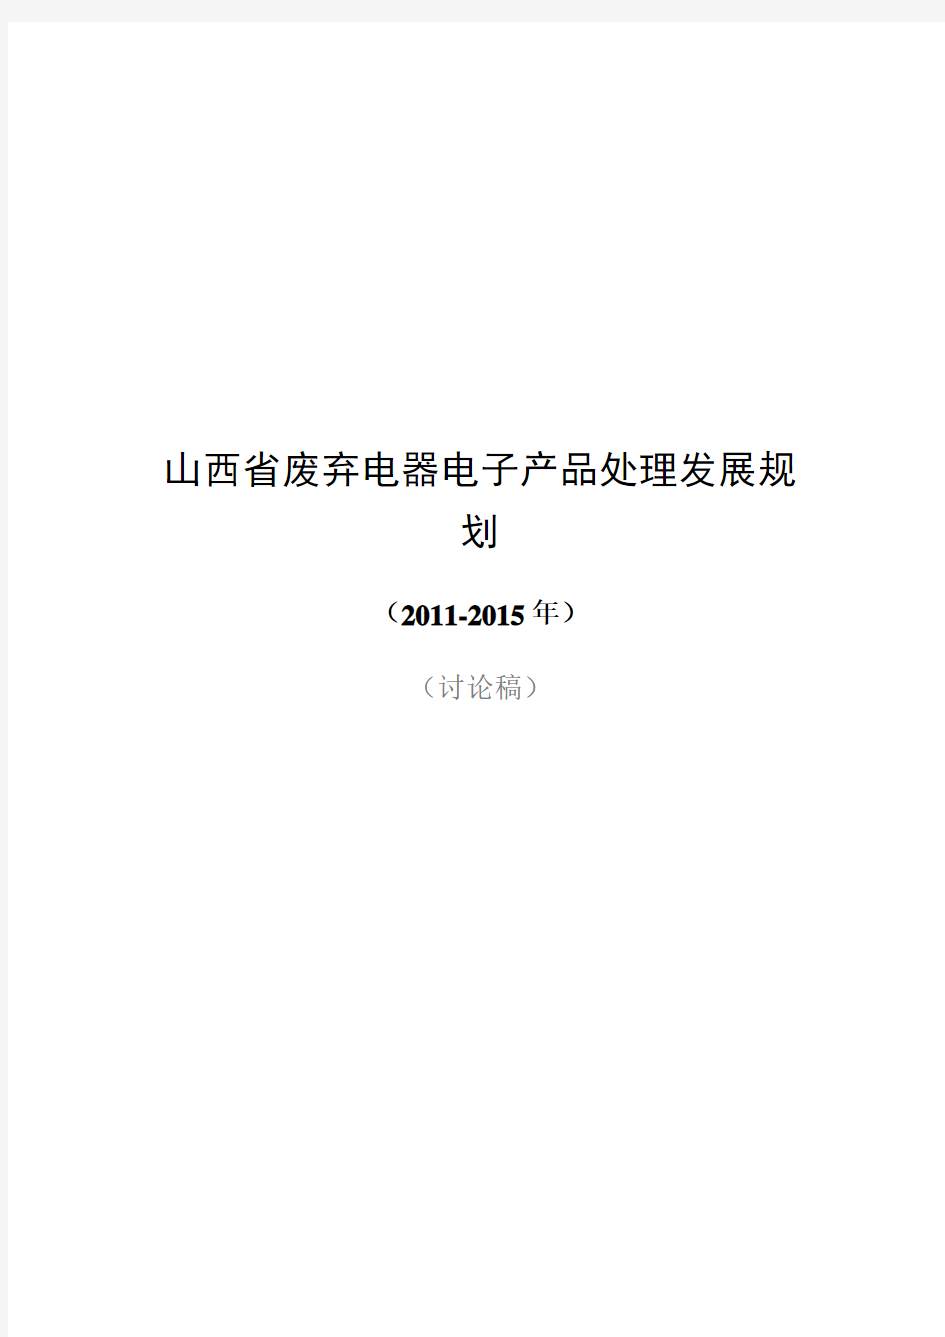 山西省废弃电器电子产品年度处理发展规划(doc 37页)